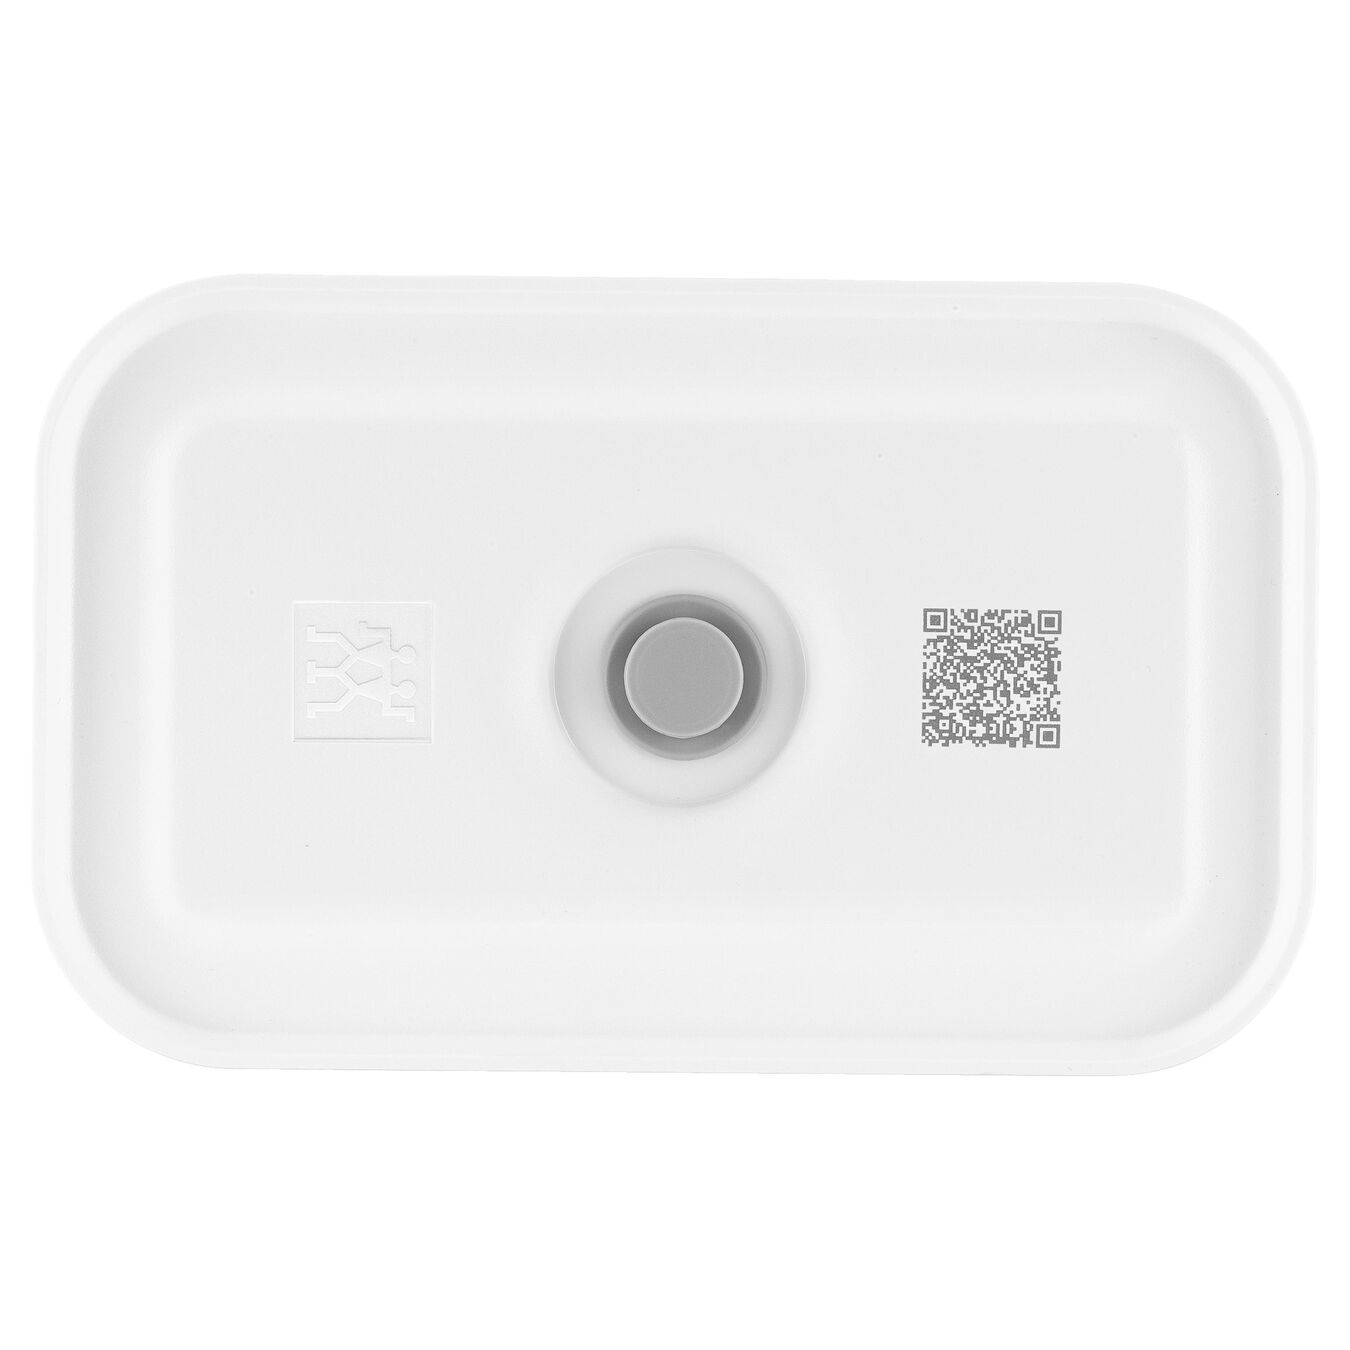 Lunch box sottovuoto M, plastica, semi transparente-grigio,,large 2